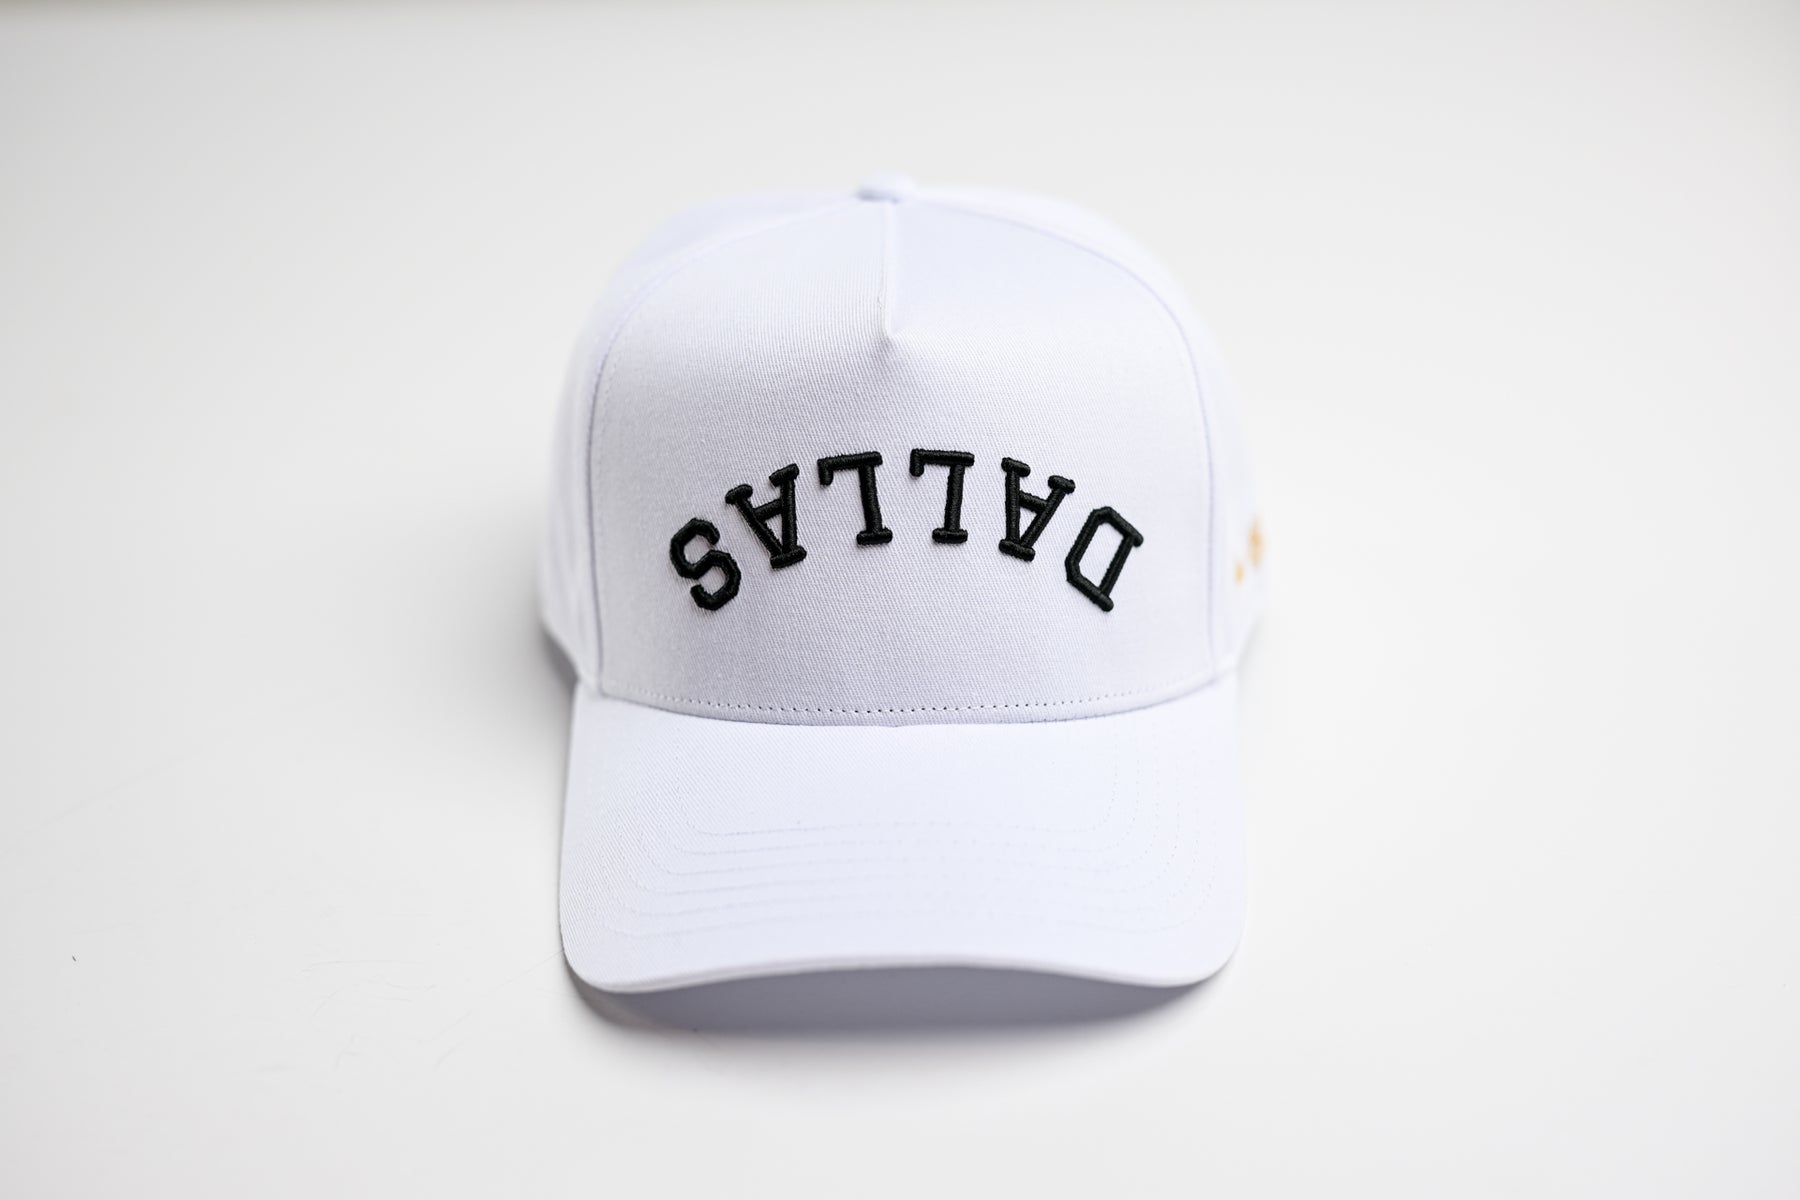 True Brand True Brvnd Woven Snapback Trucker Hat / Cap Dallas